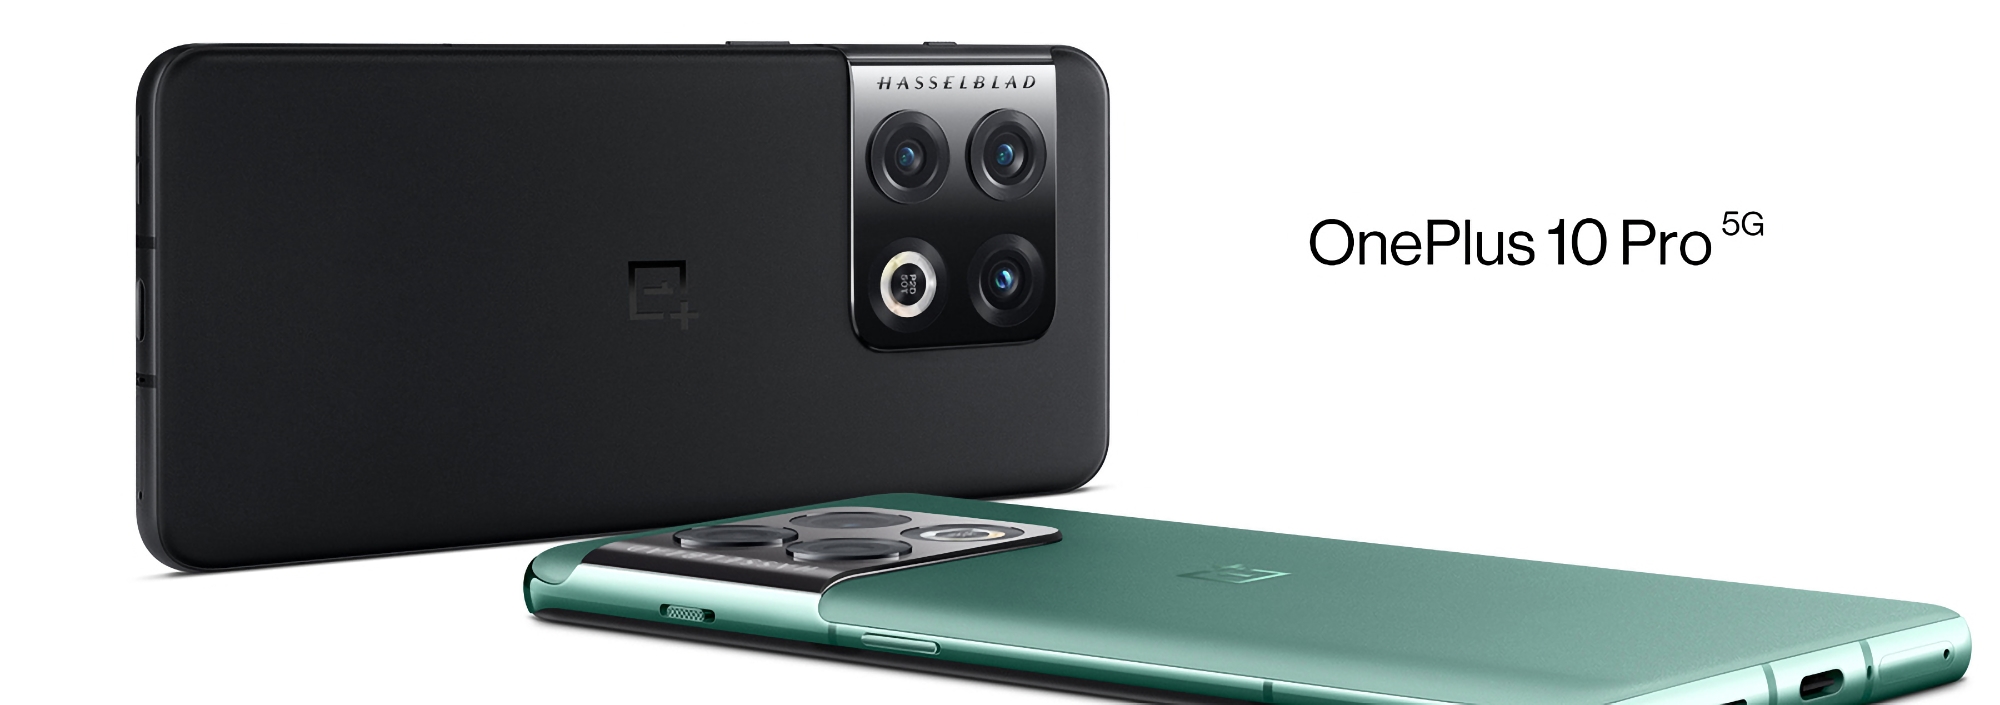 Пользователи OnePlus 10 Pro начали получать OxygenOS 14.0.0.700: что нового